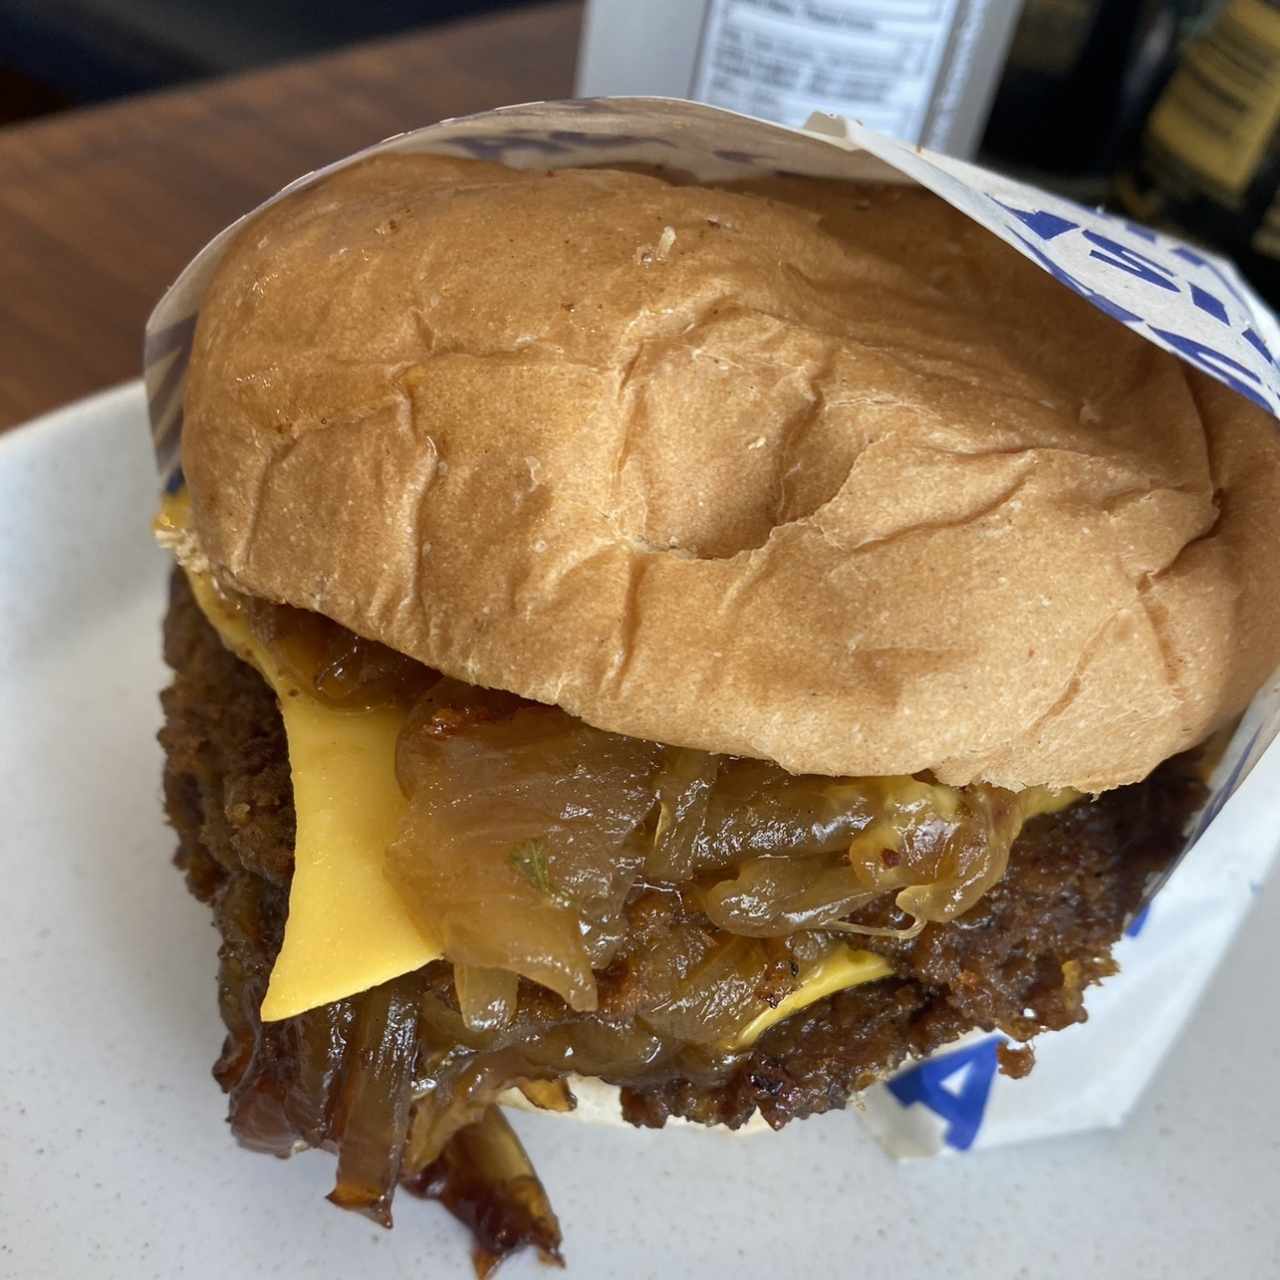 Sandwiches - Cheeze burger